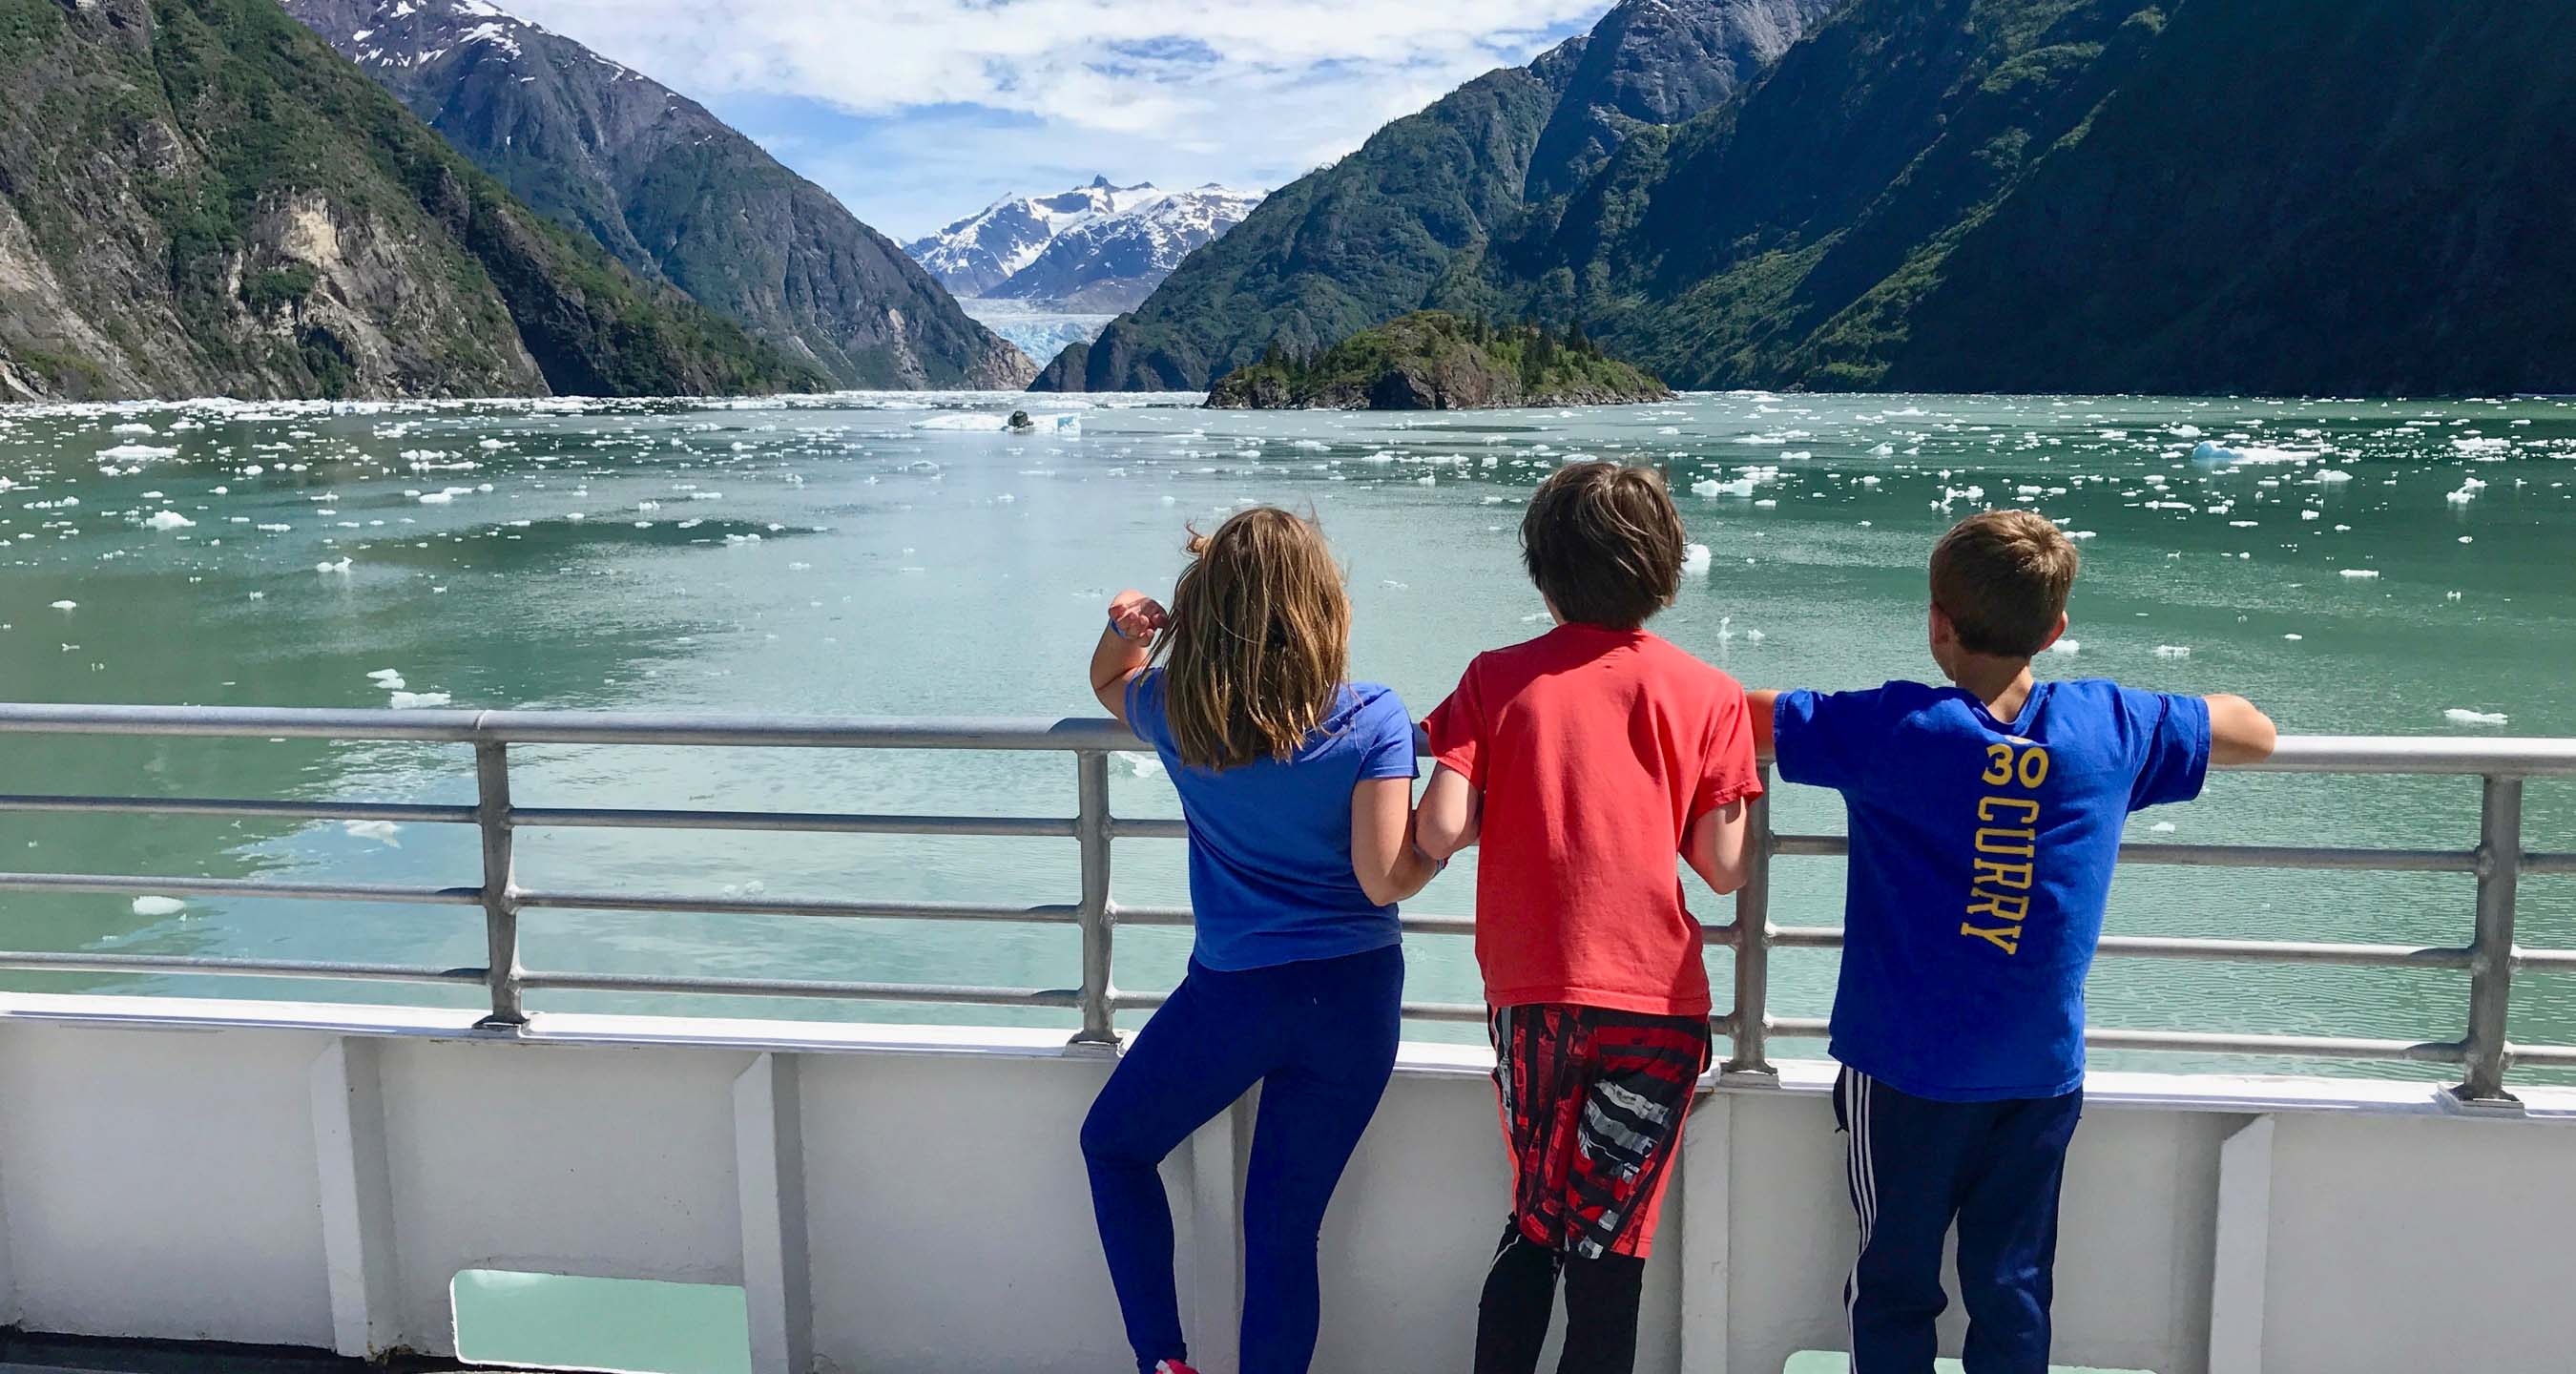 Siblings on a ferry in Alaska